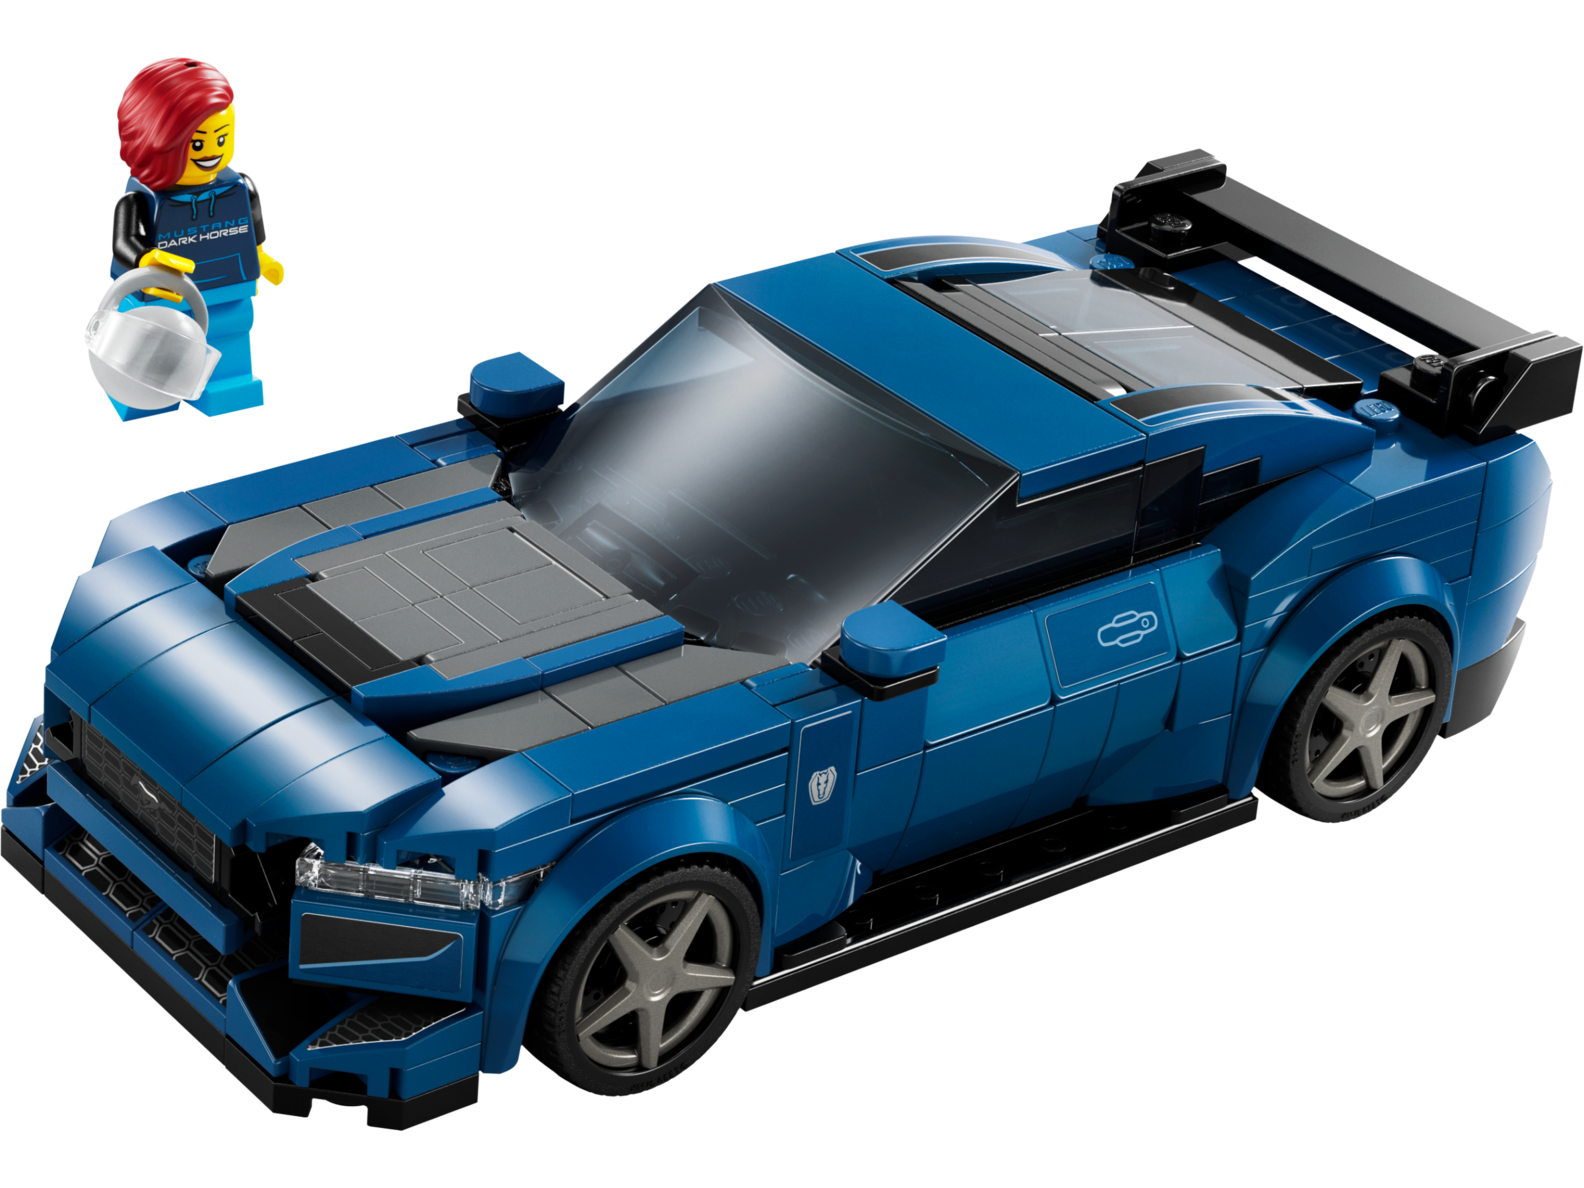 Tilbud: Ford Mustang Dark Horse-sportsbil kr 369,9 på Lego